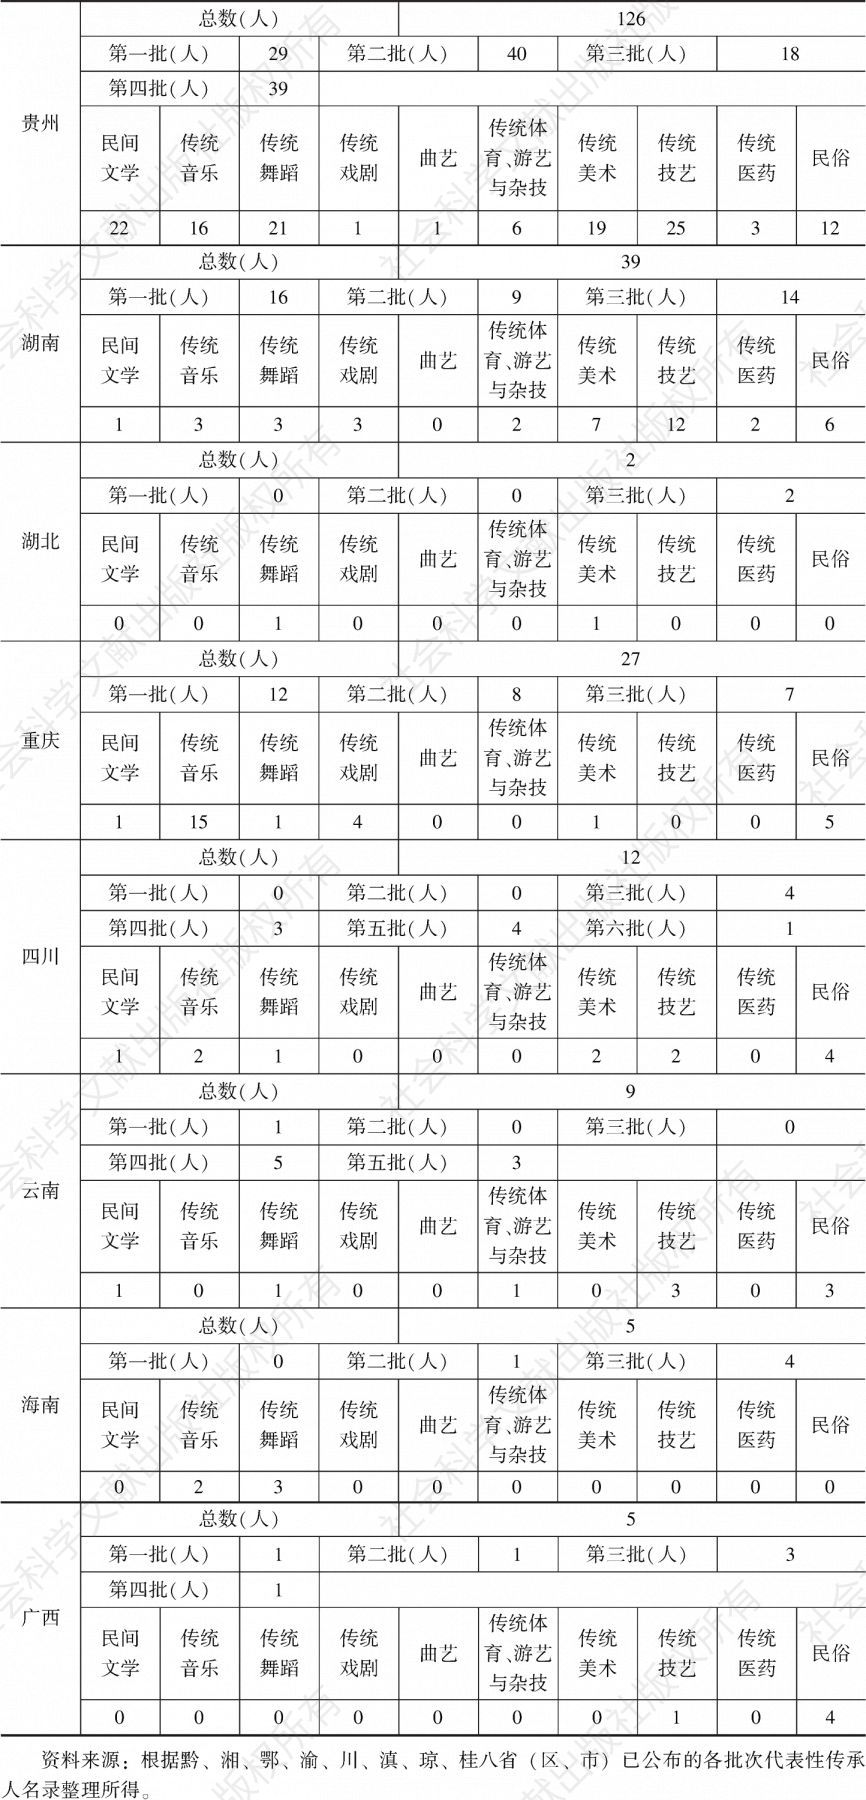 表4 黔、湘、鄂、渝、川、滇、琼、桂苗族省级非遗项目代表性传承人统计